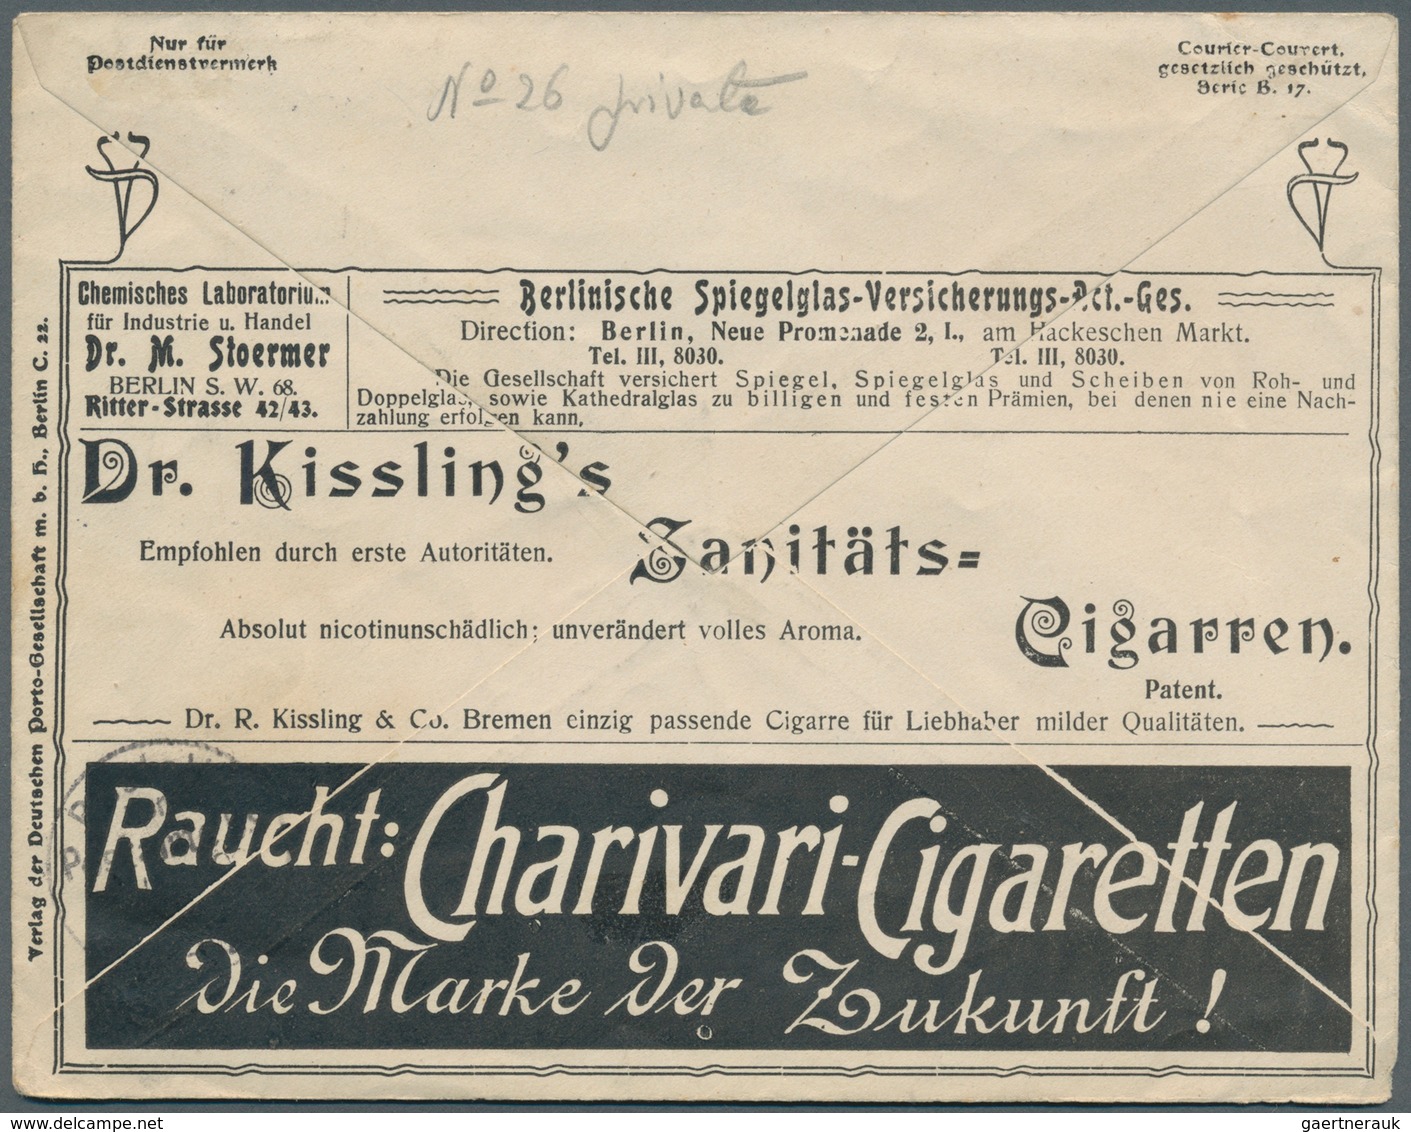 31028 Deutschland: 1864/1949, Lot von sechs besseren Belegen, dabei Altdeuschland, drei Privat-Ganzsachen